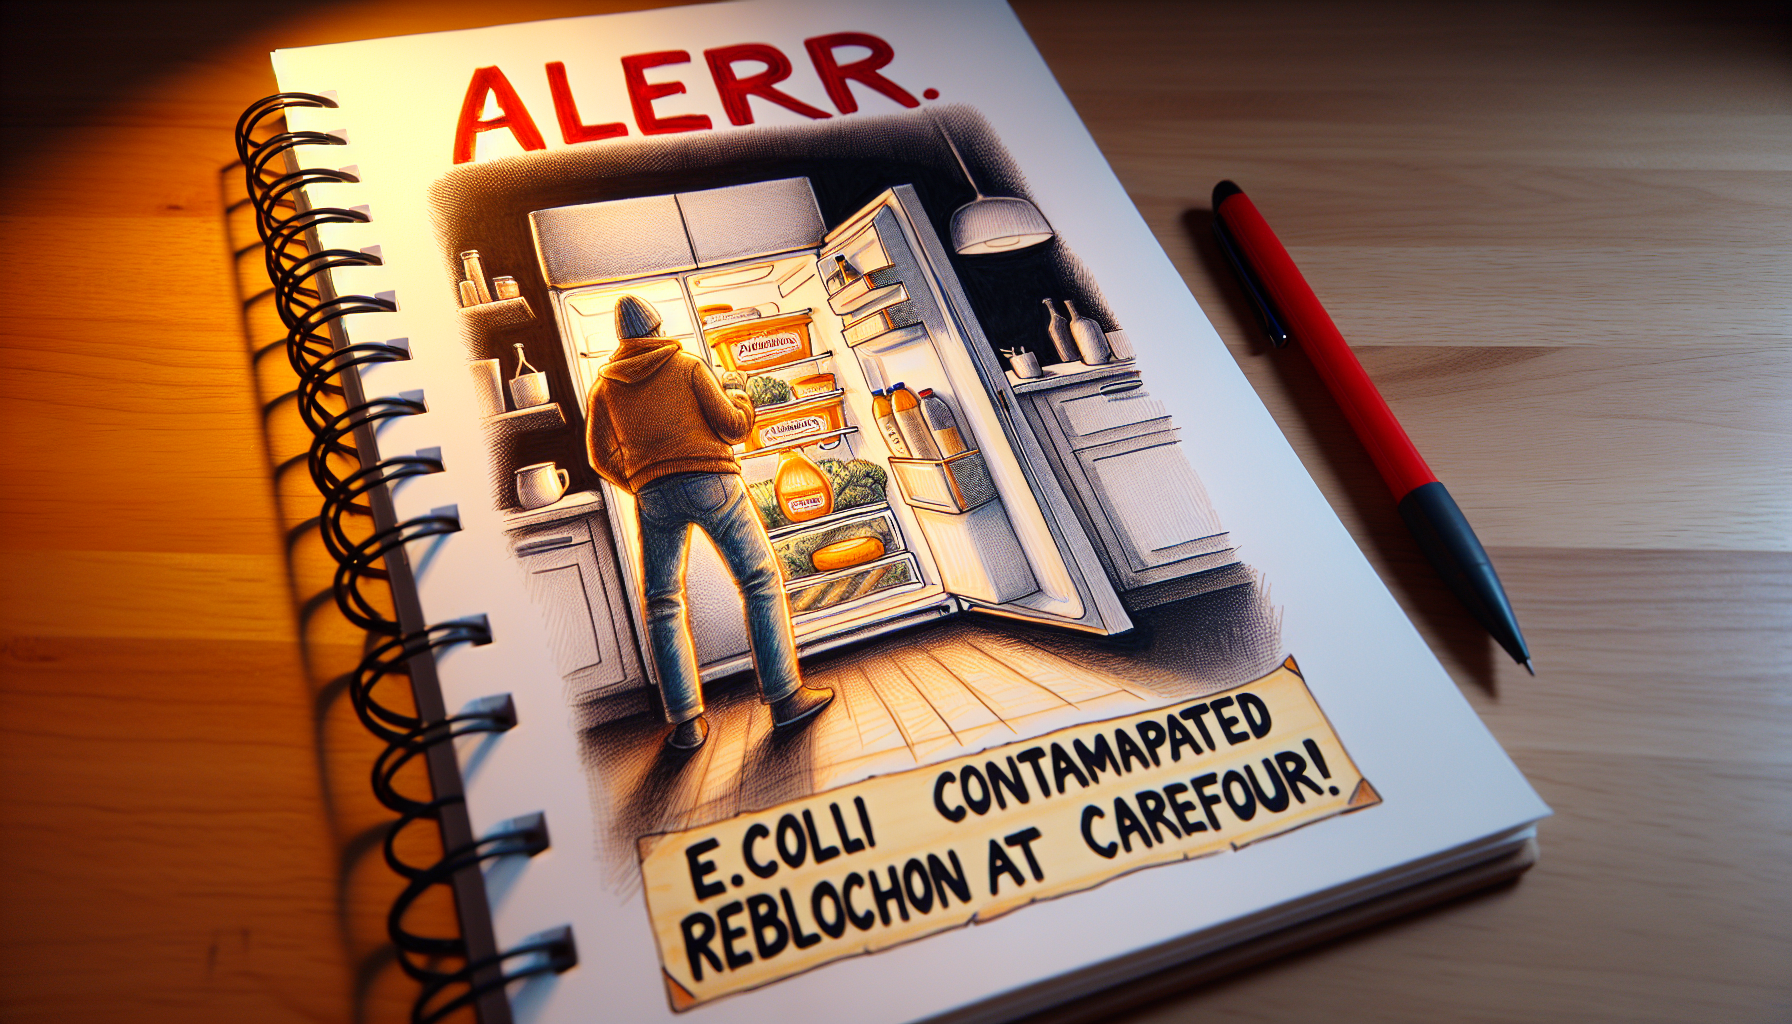 alerte alimentaire chez carrefour : du reblochon contaminé par la bactérie e.coli dans votre frigo ? restez informé sur les dernières actualités et protégez-vous et votre famille.